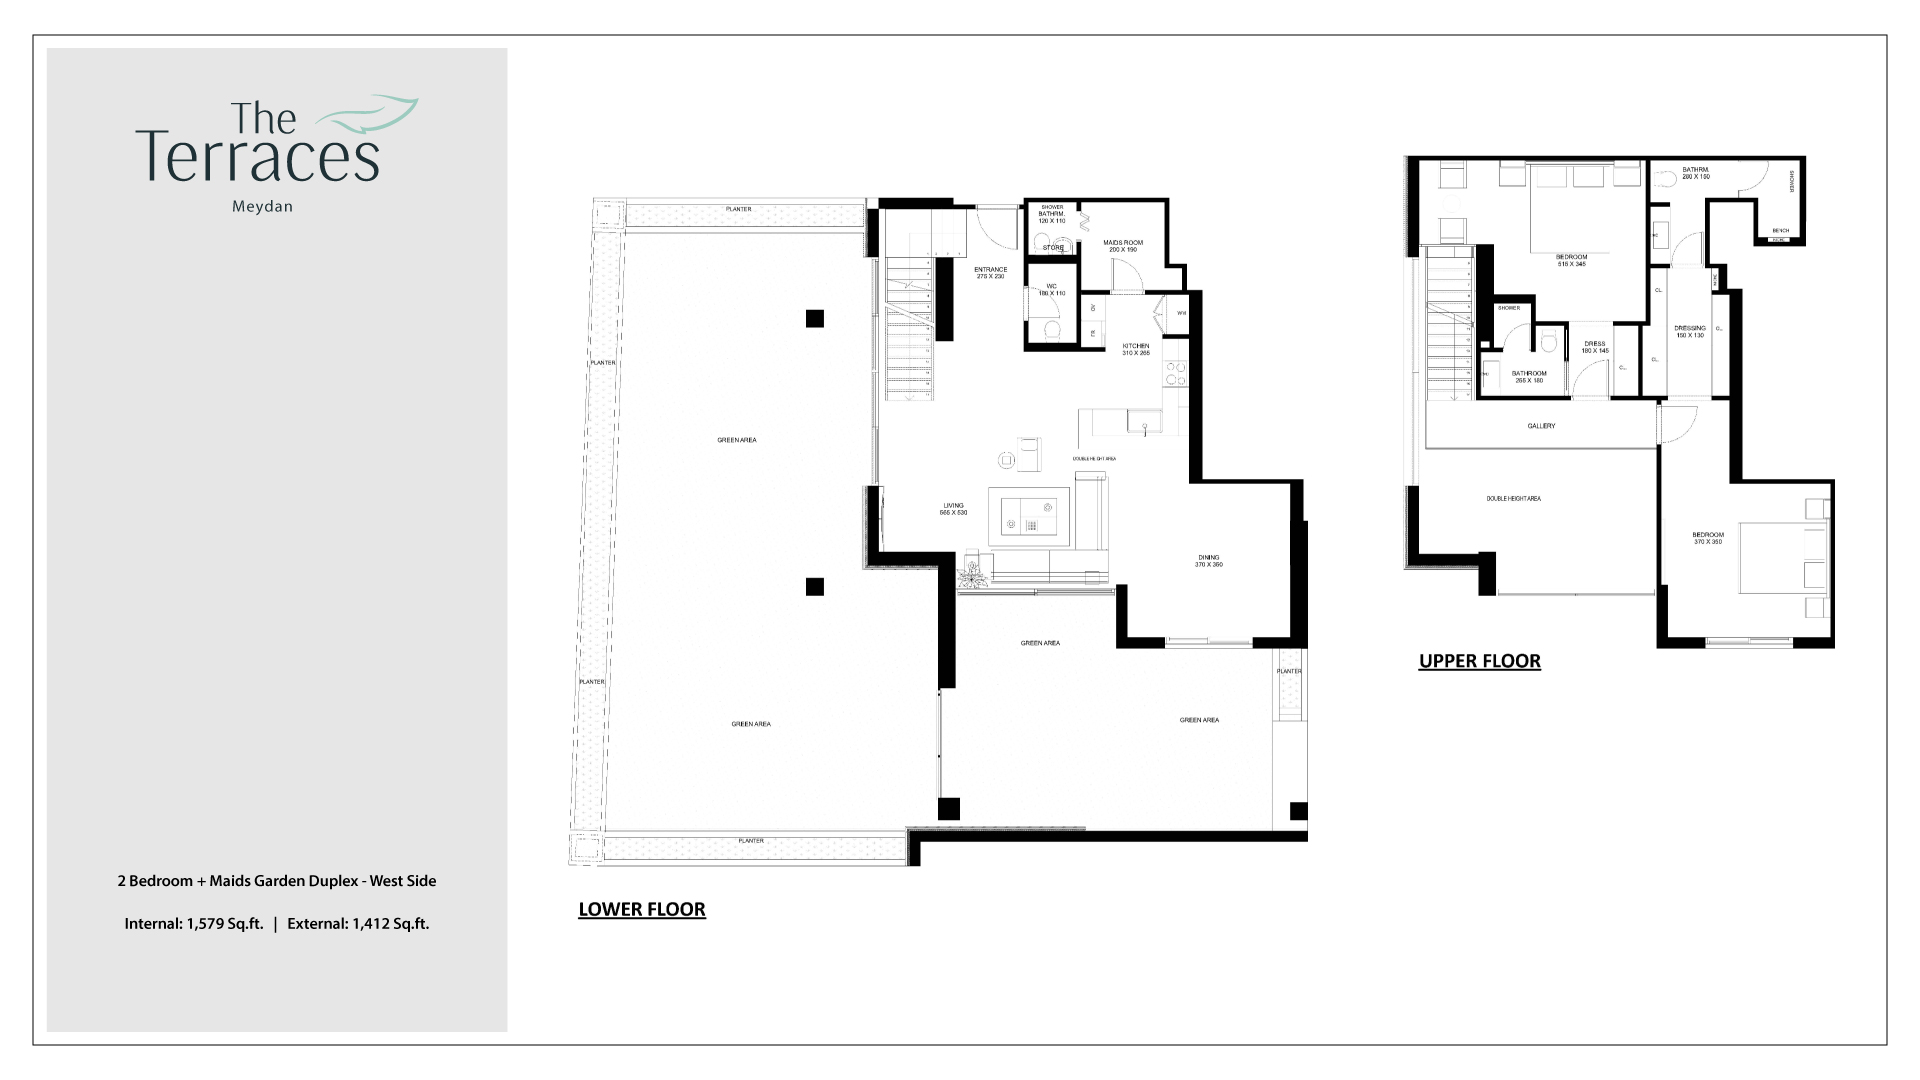 The Terraces 2 Bedroom Garden Duplex + Maids West Side Apartment Floor Plan